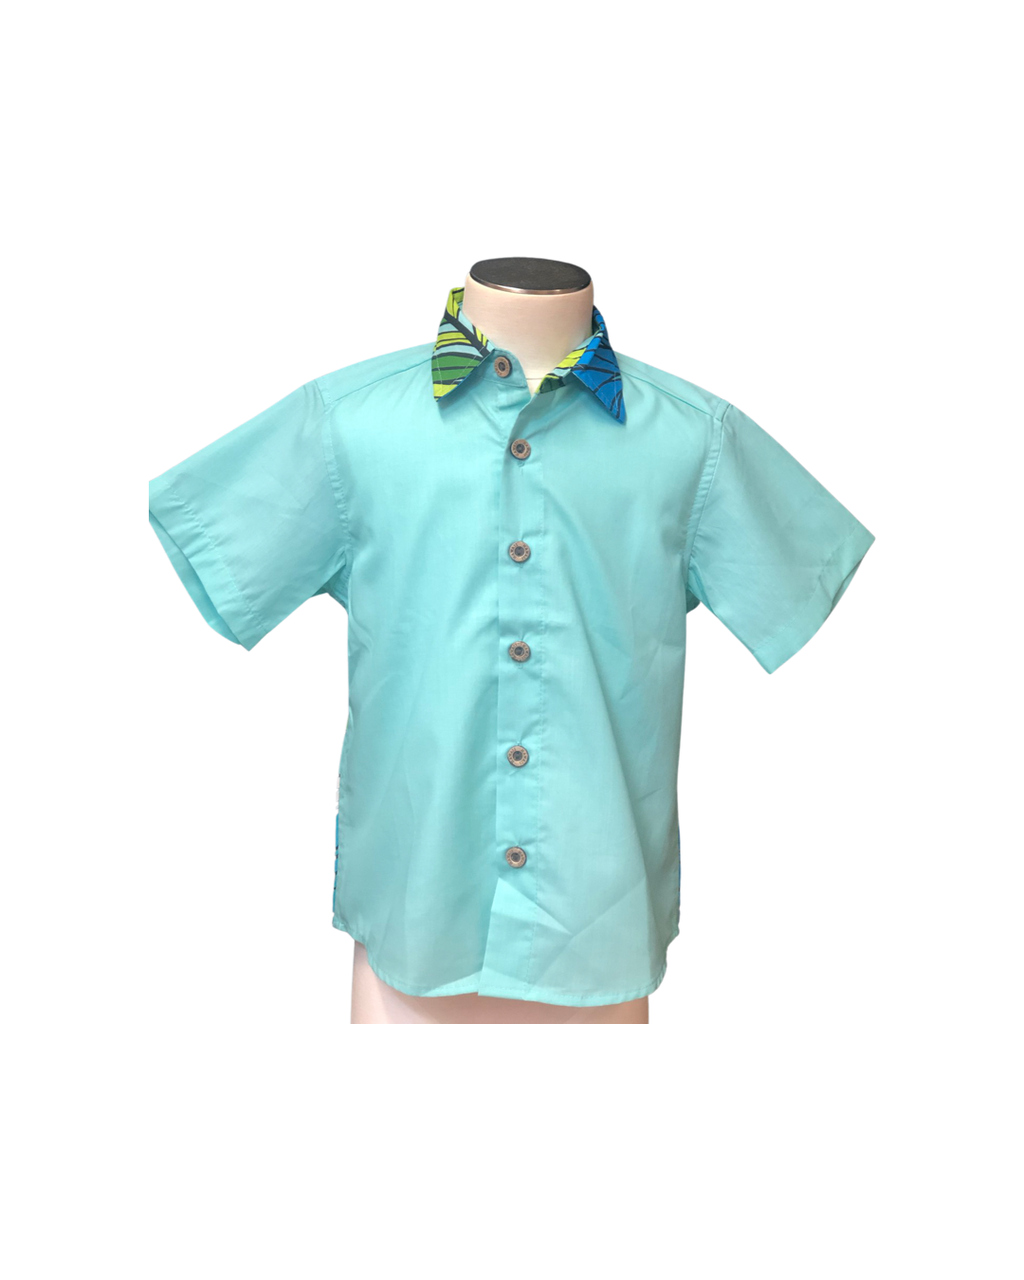 Coradorables BOYS XL HIBISCUS AQUA S/S "Kalani" Aloha Shirt